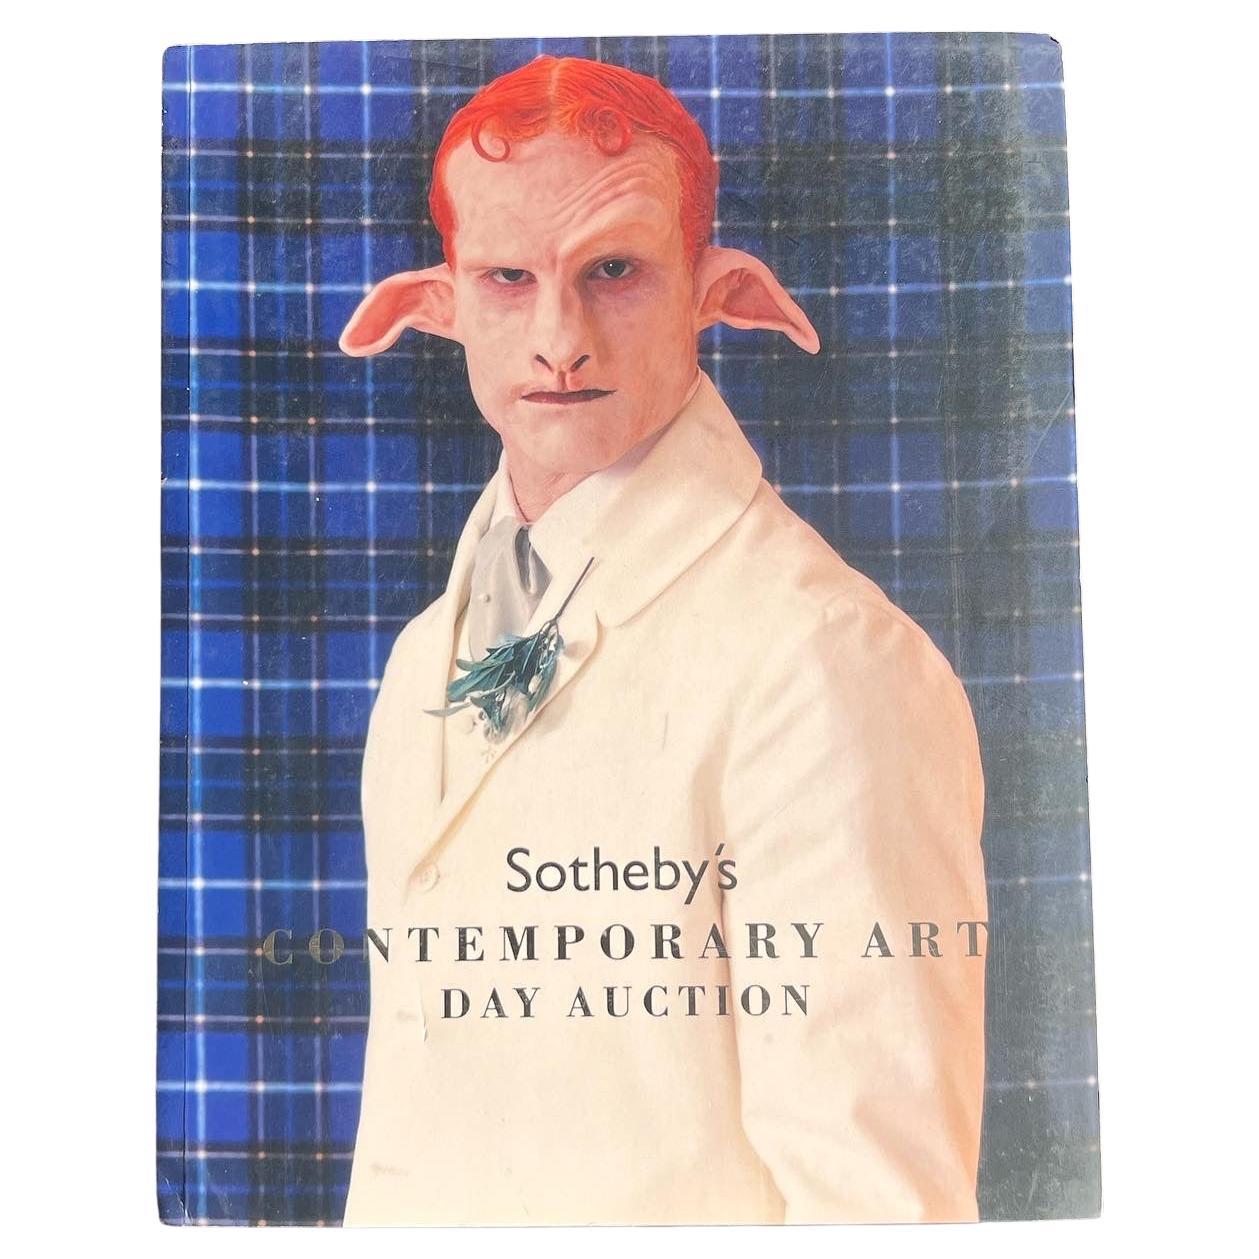 Catalogue de la journée de vente aux enchères d'art contemporain de Sotheby's, Londres, 2007.